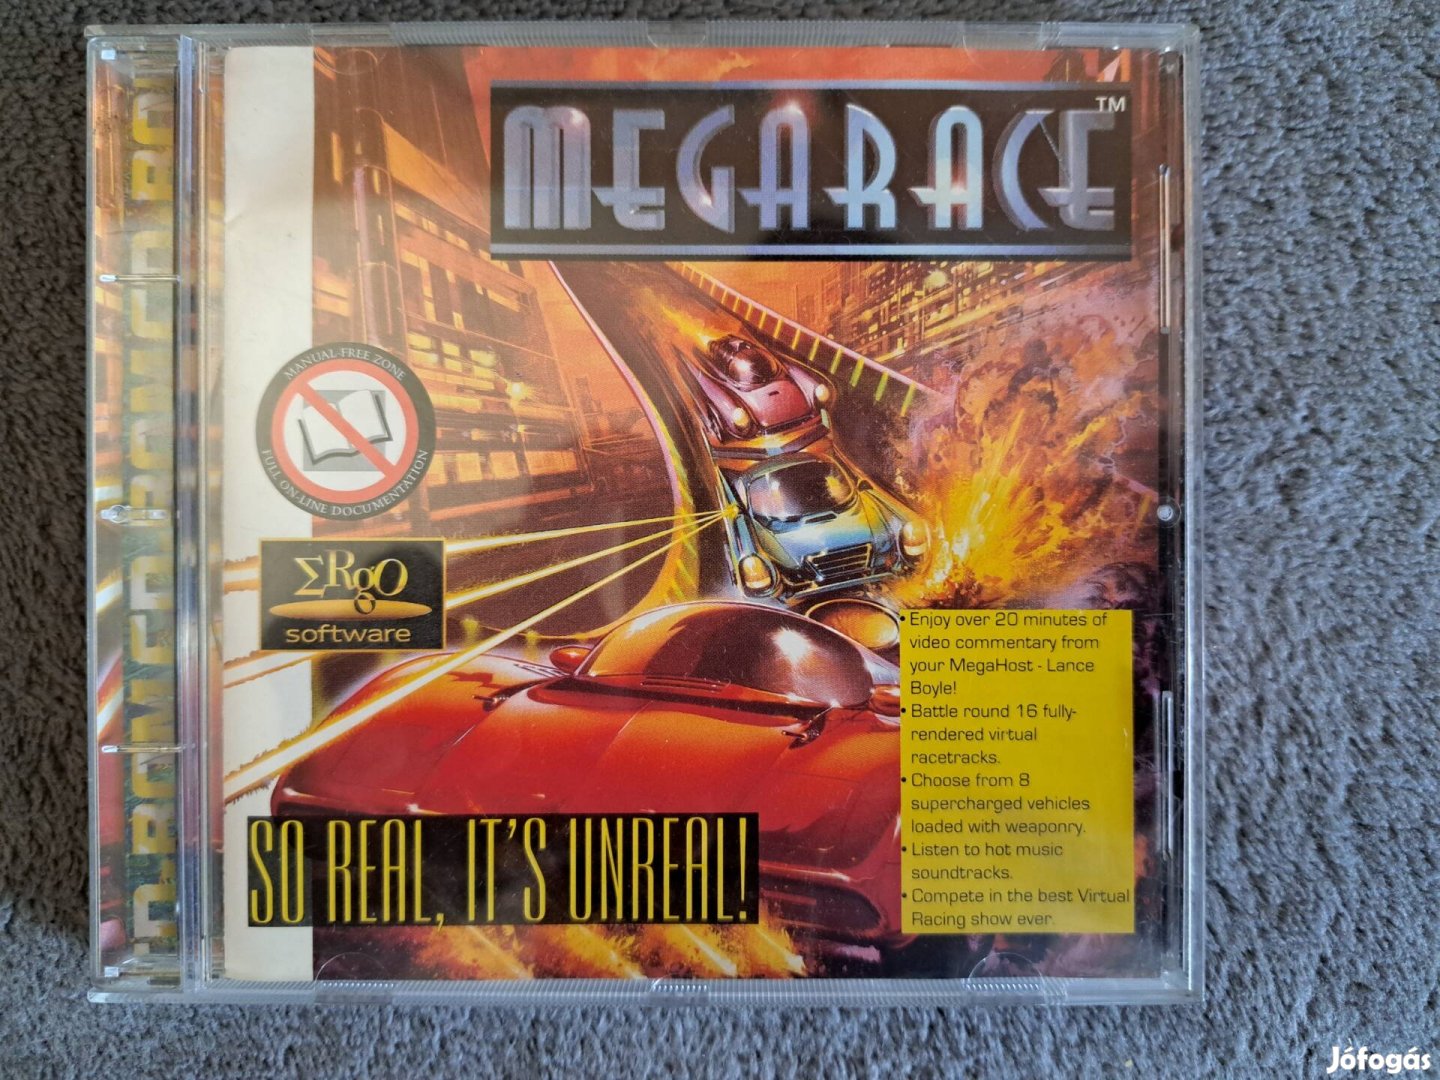 Megarace PC, CD -ROM , (DOS 1994) játék